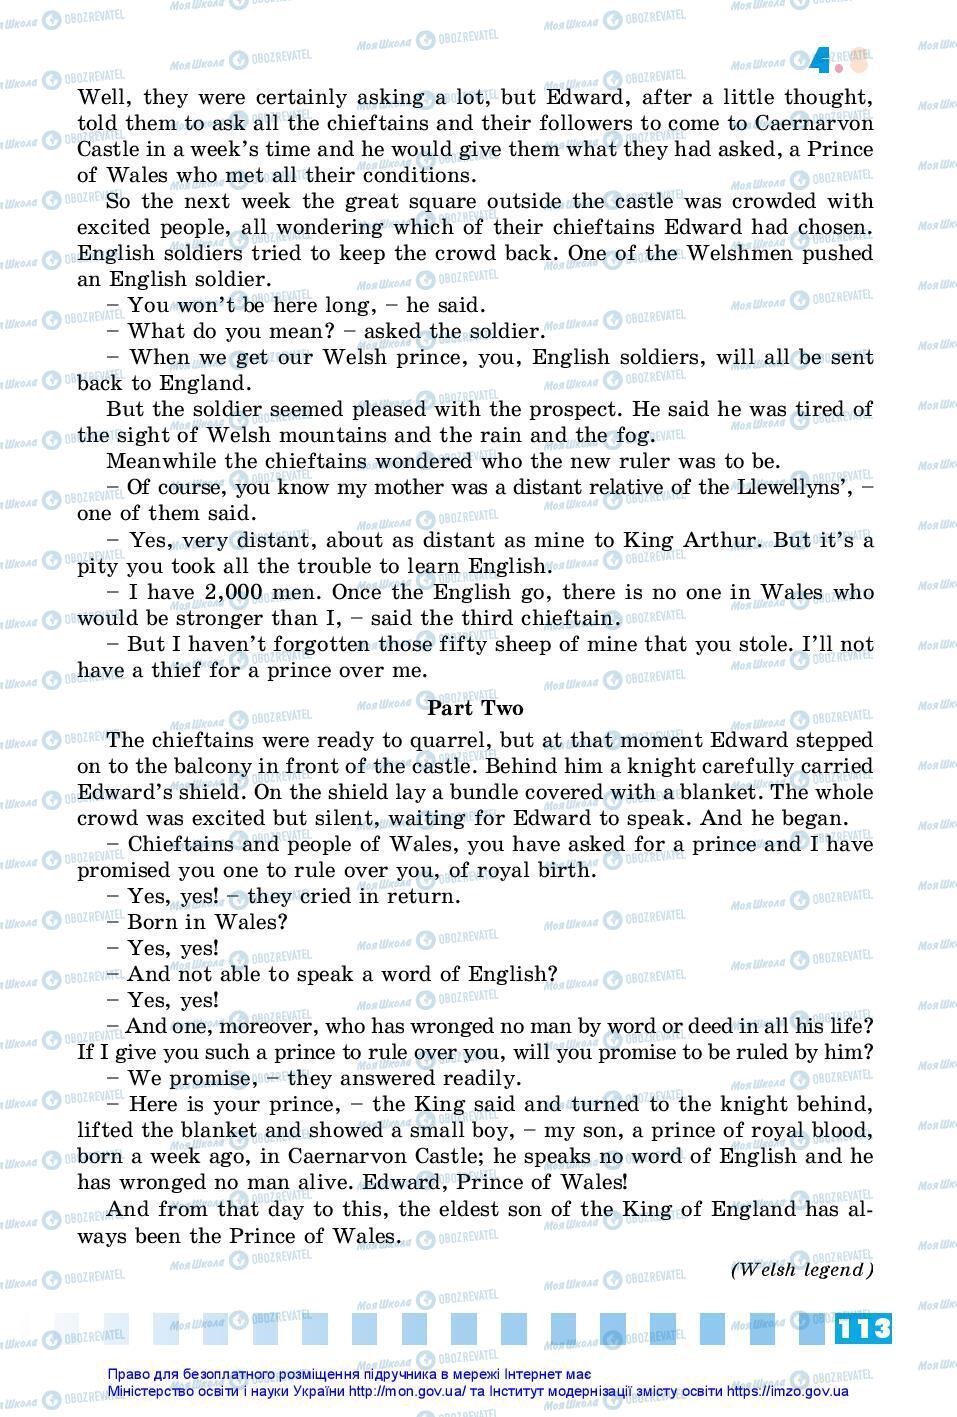 Підручники Англійська мова 7 клас сторінка 113